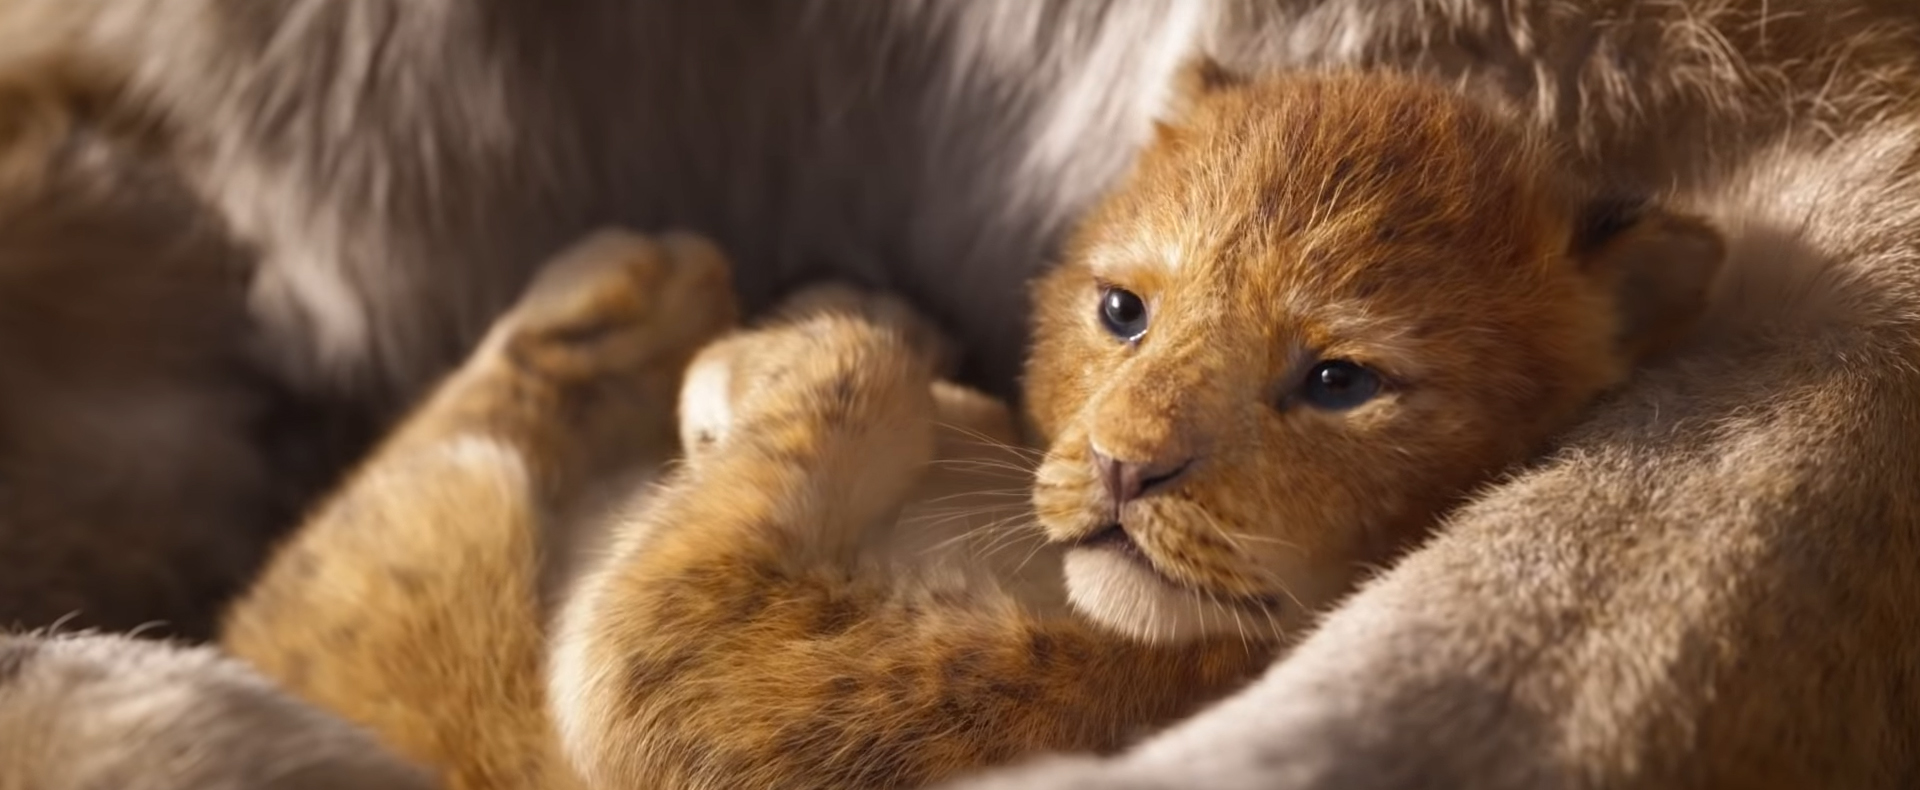 Première bande annonce pour le film «Le Roi Lion»